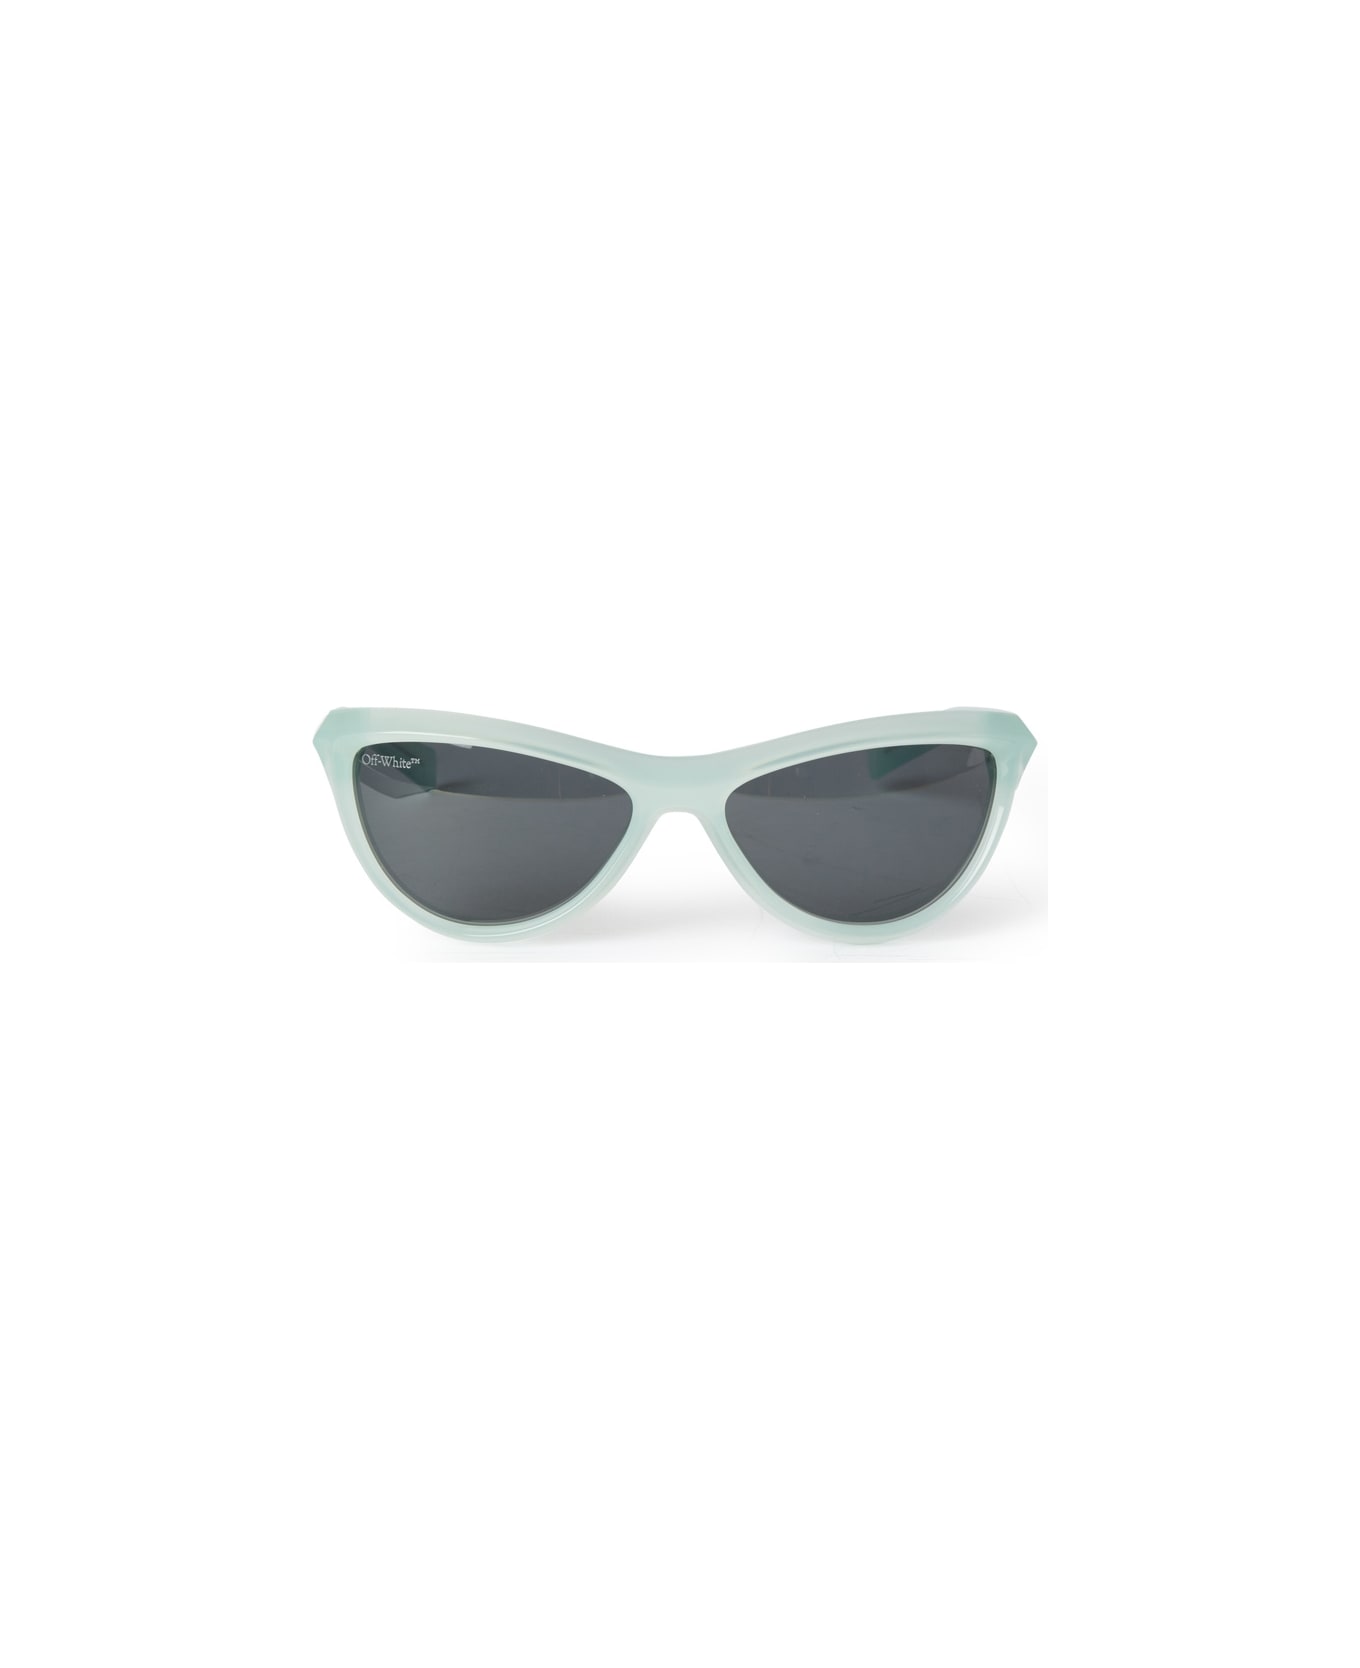 Off-White ATLANTA SUNGLASSES Sunglasses - Teal